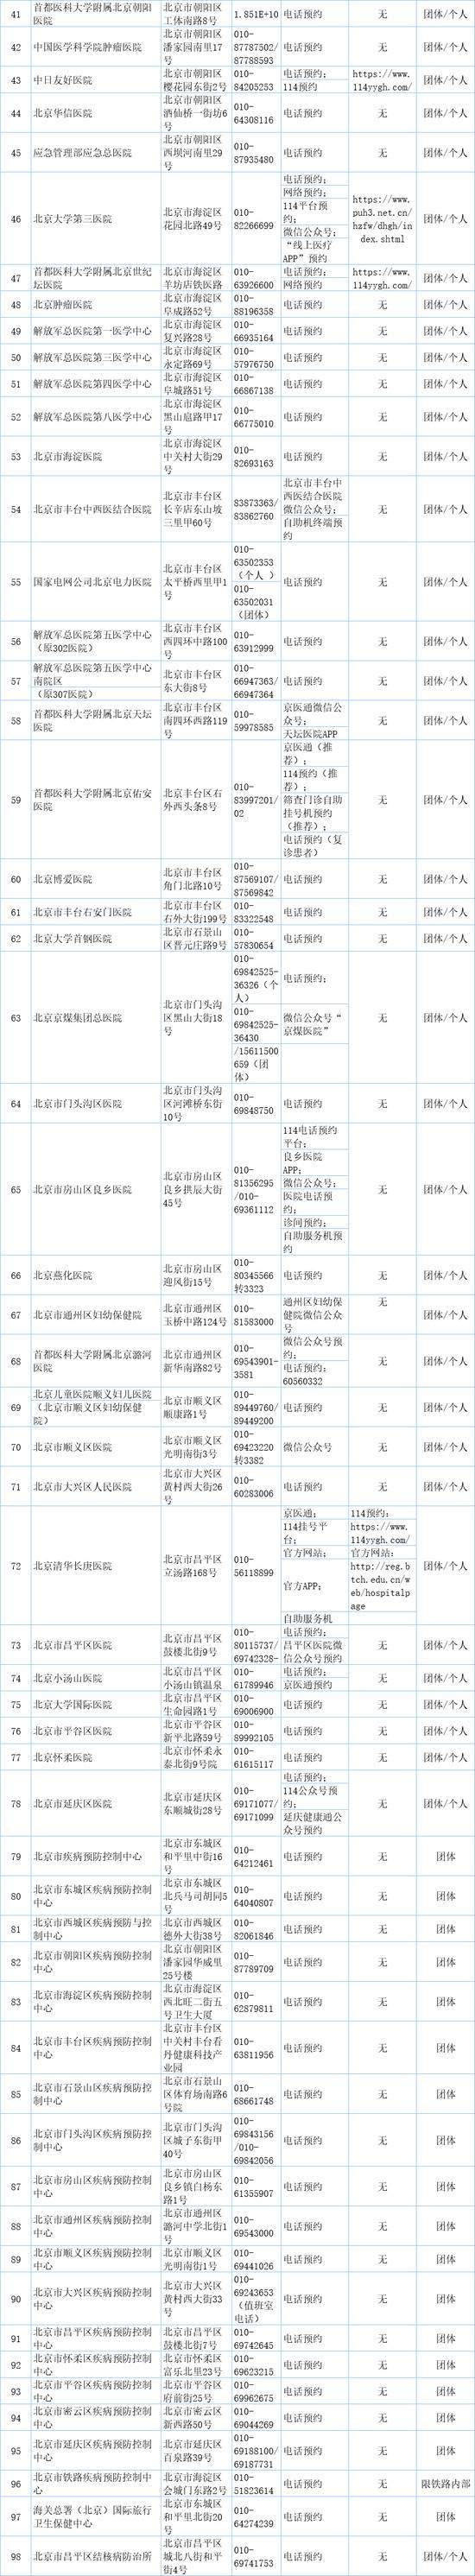 北京市公布新冠病毒核酸检测服务的医疗卫生机构名单